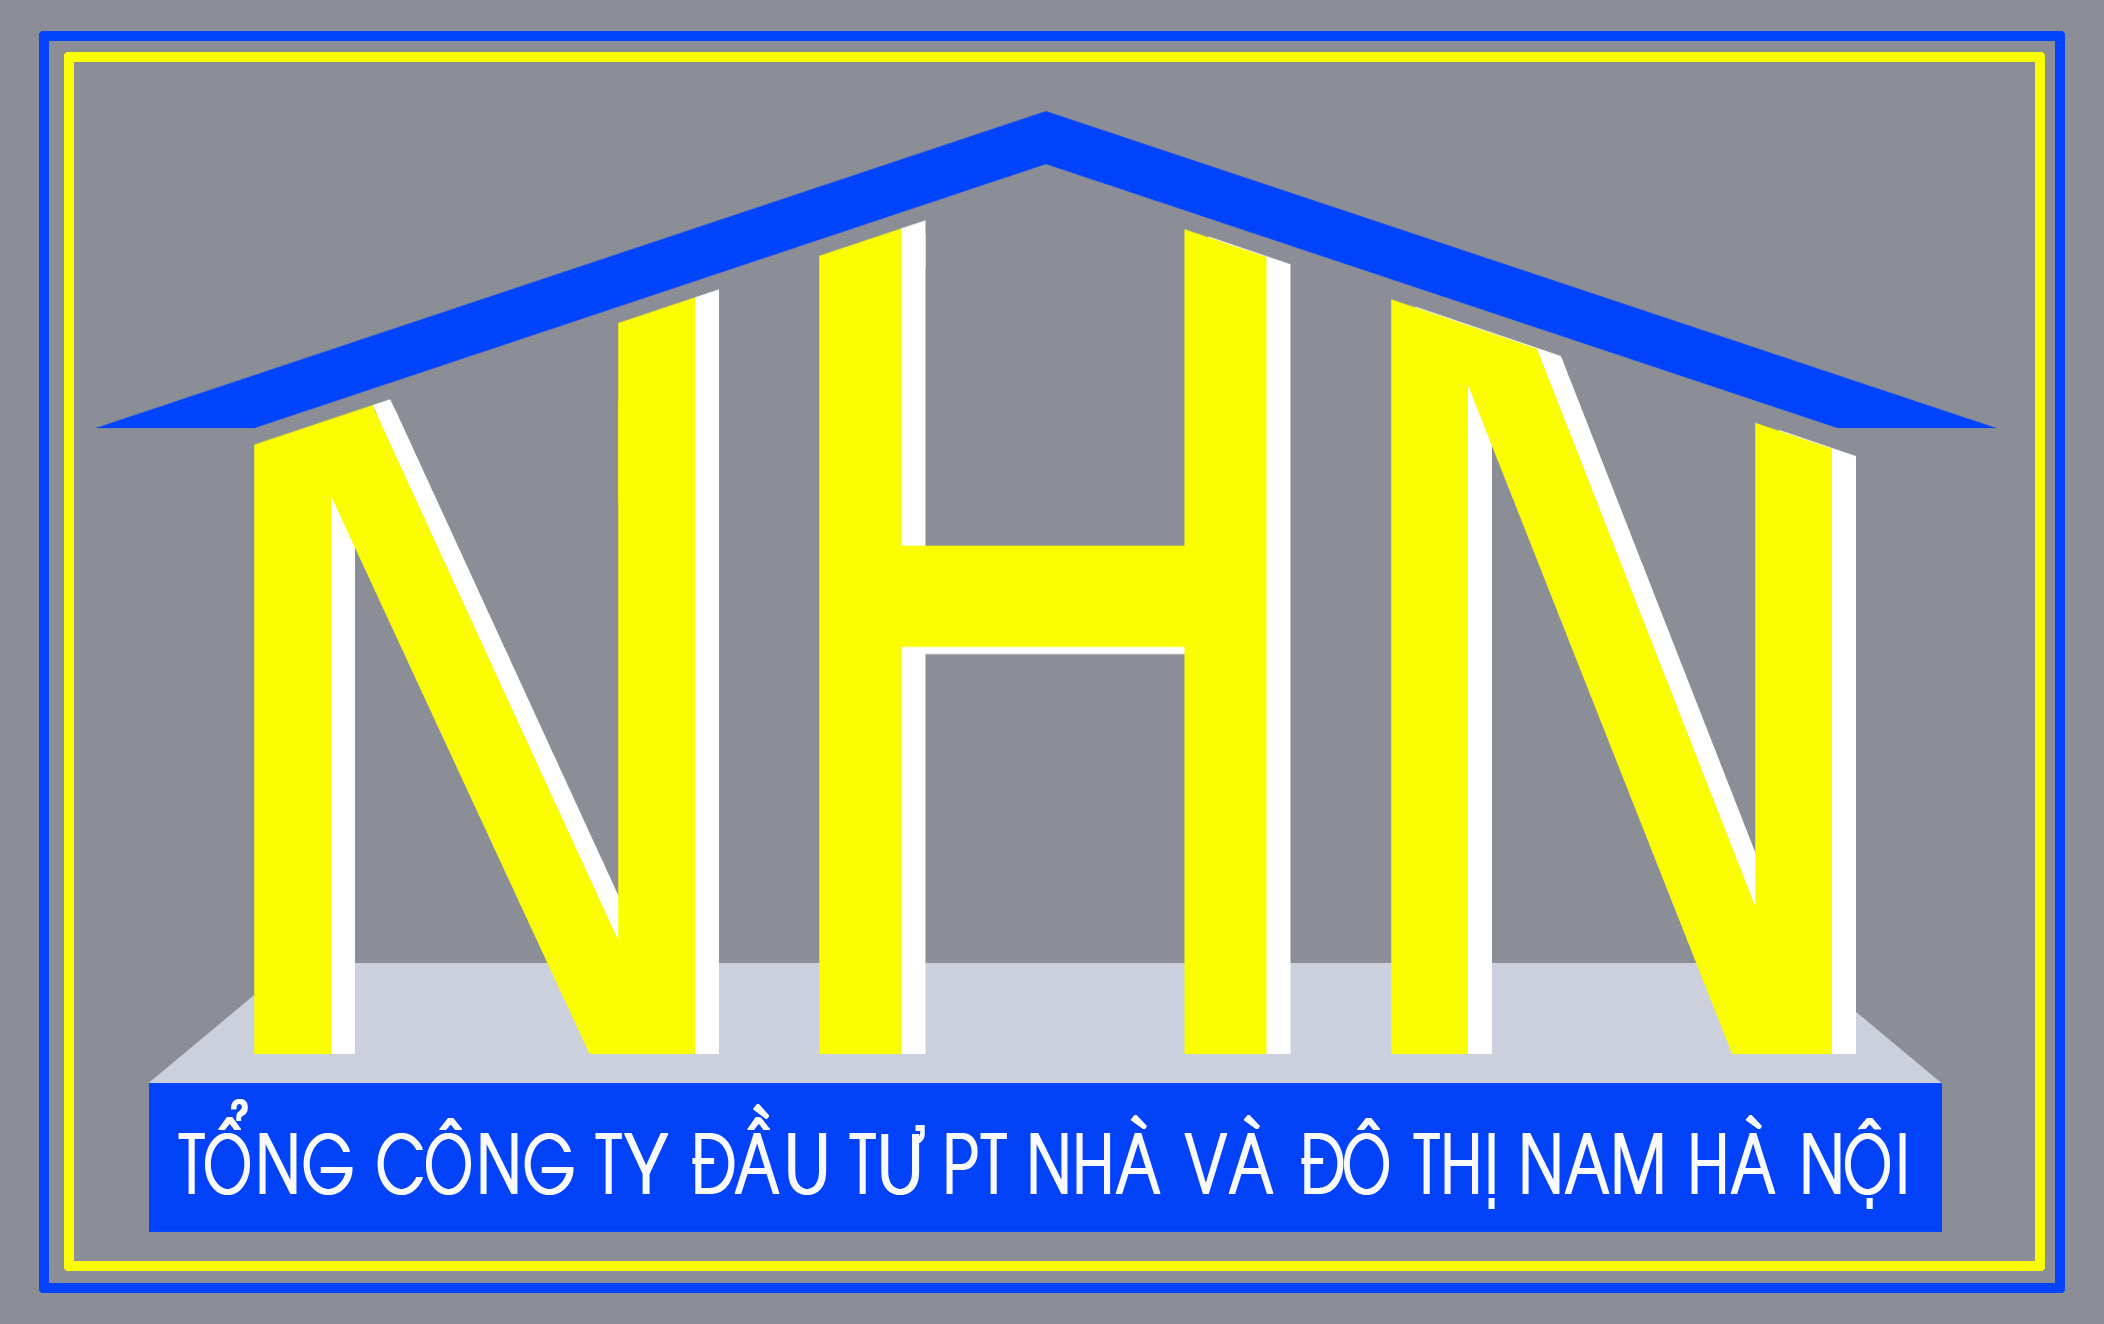 NHN: Chuyển nhượng toàn bộ gần 56 triệu cp của Đầu tư Sen Việt Công Thương